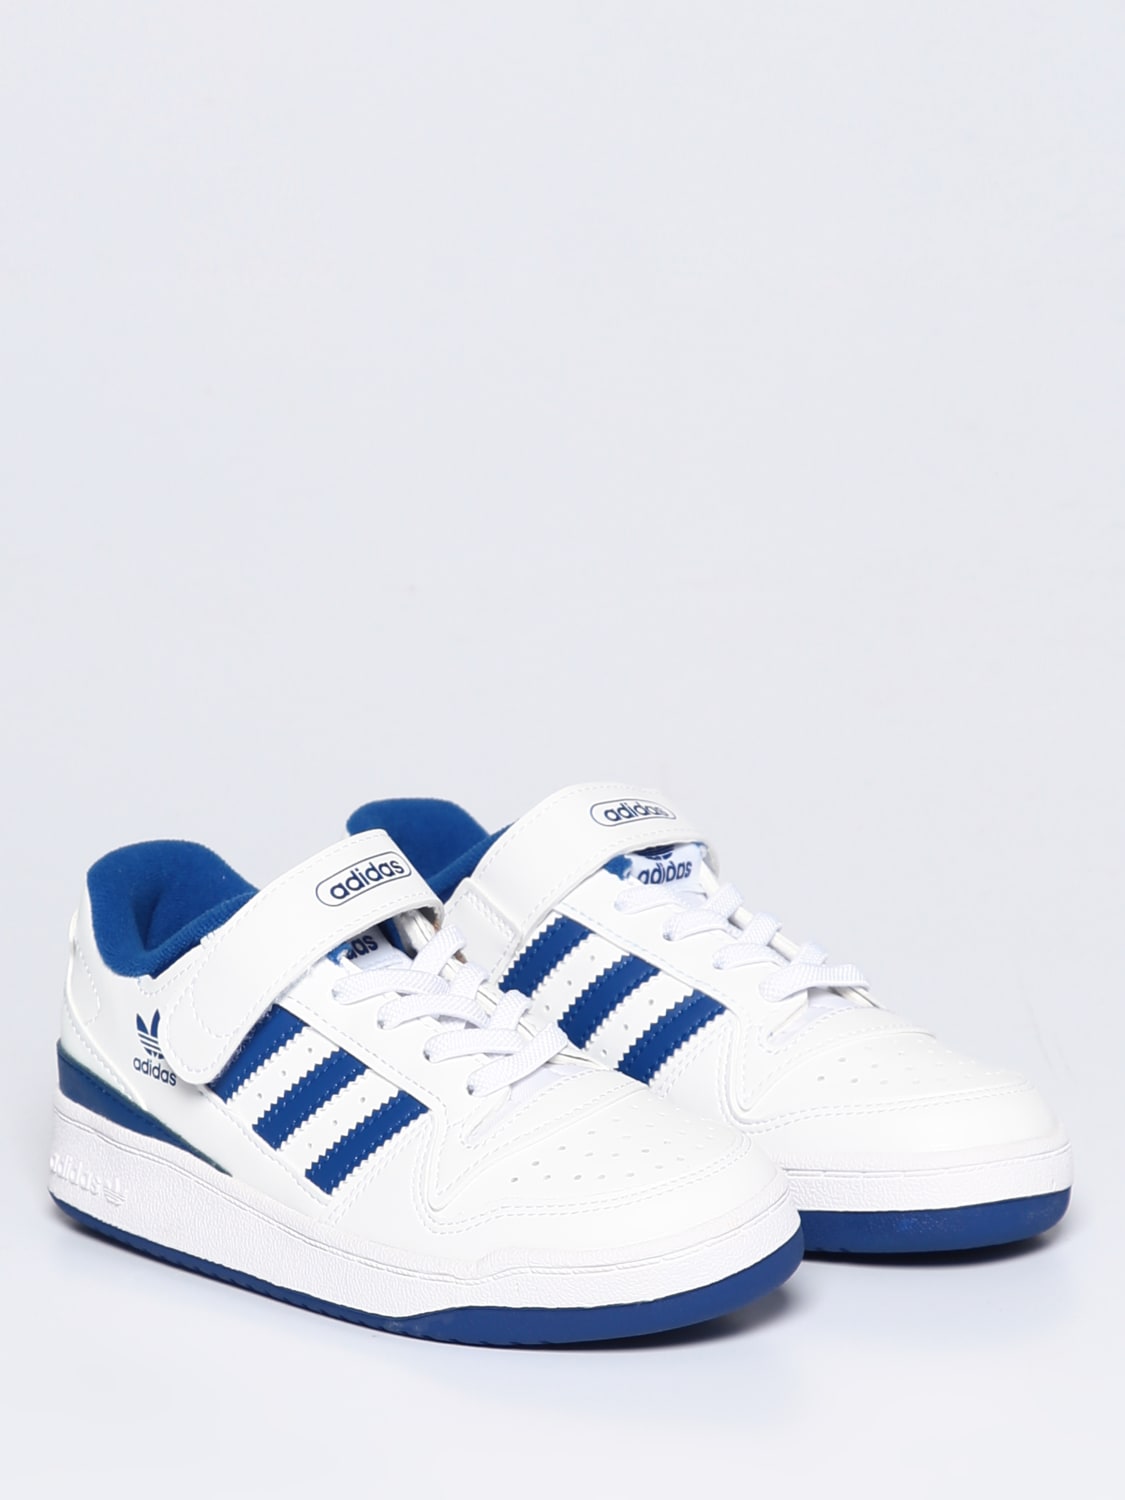 Minimaal optellen samenzwering ADIDAS ORIGINALS: Jungen Schuhe - Weiß | Adidas Originals Schuhe FY7978  online auf GIGLIO.COM